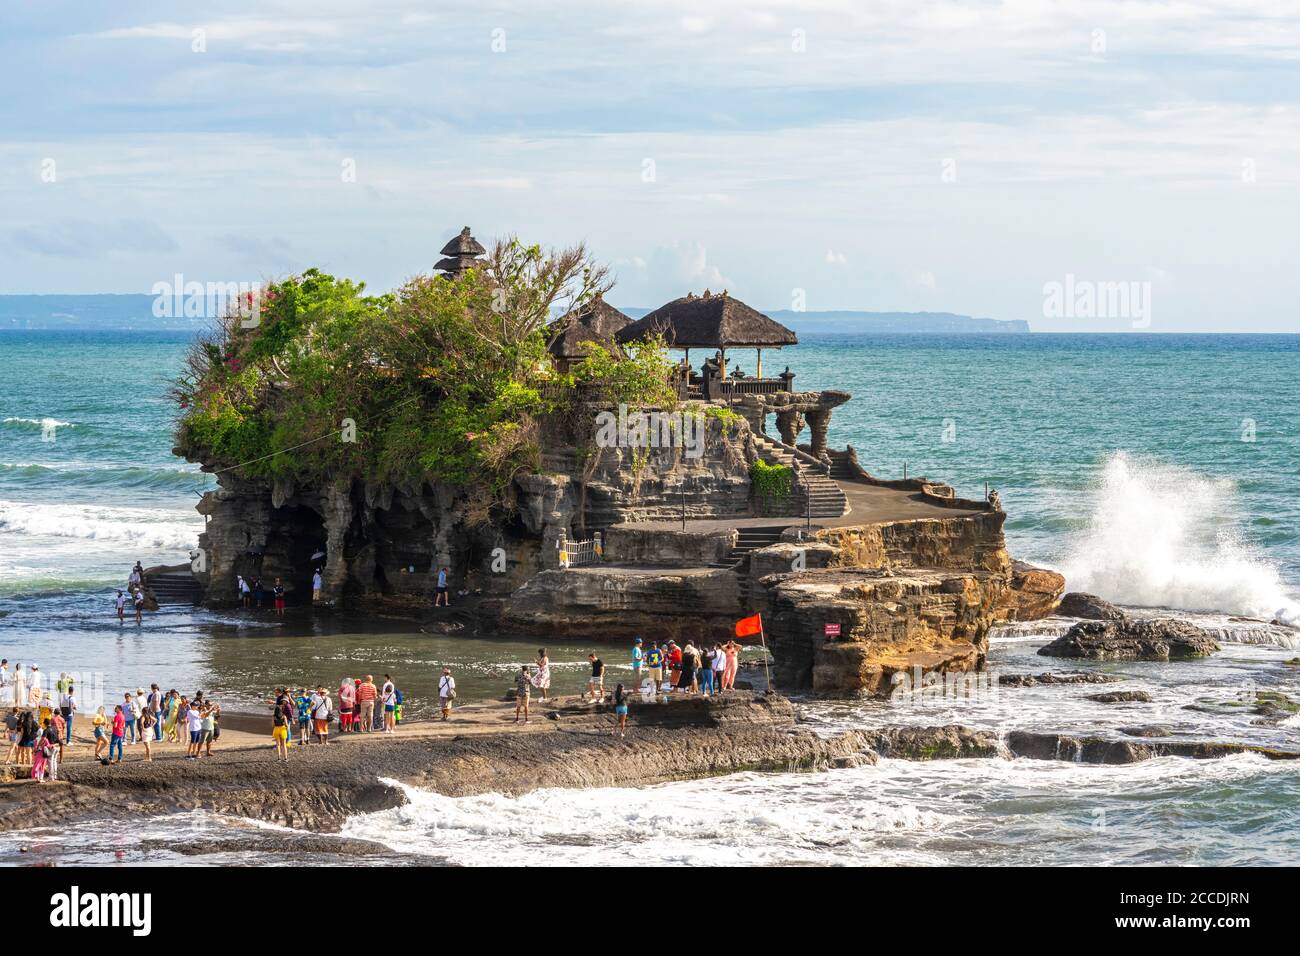 Tanah Lot est une petite île rocheuse au large de l'île indonésienne de Bali. Il abrite l'ancien temple de pèlerinage hindou Pura Tanah Lot ou Tanah Lot temp Banque D'Images